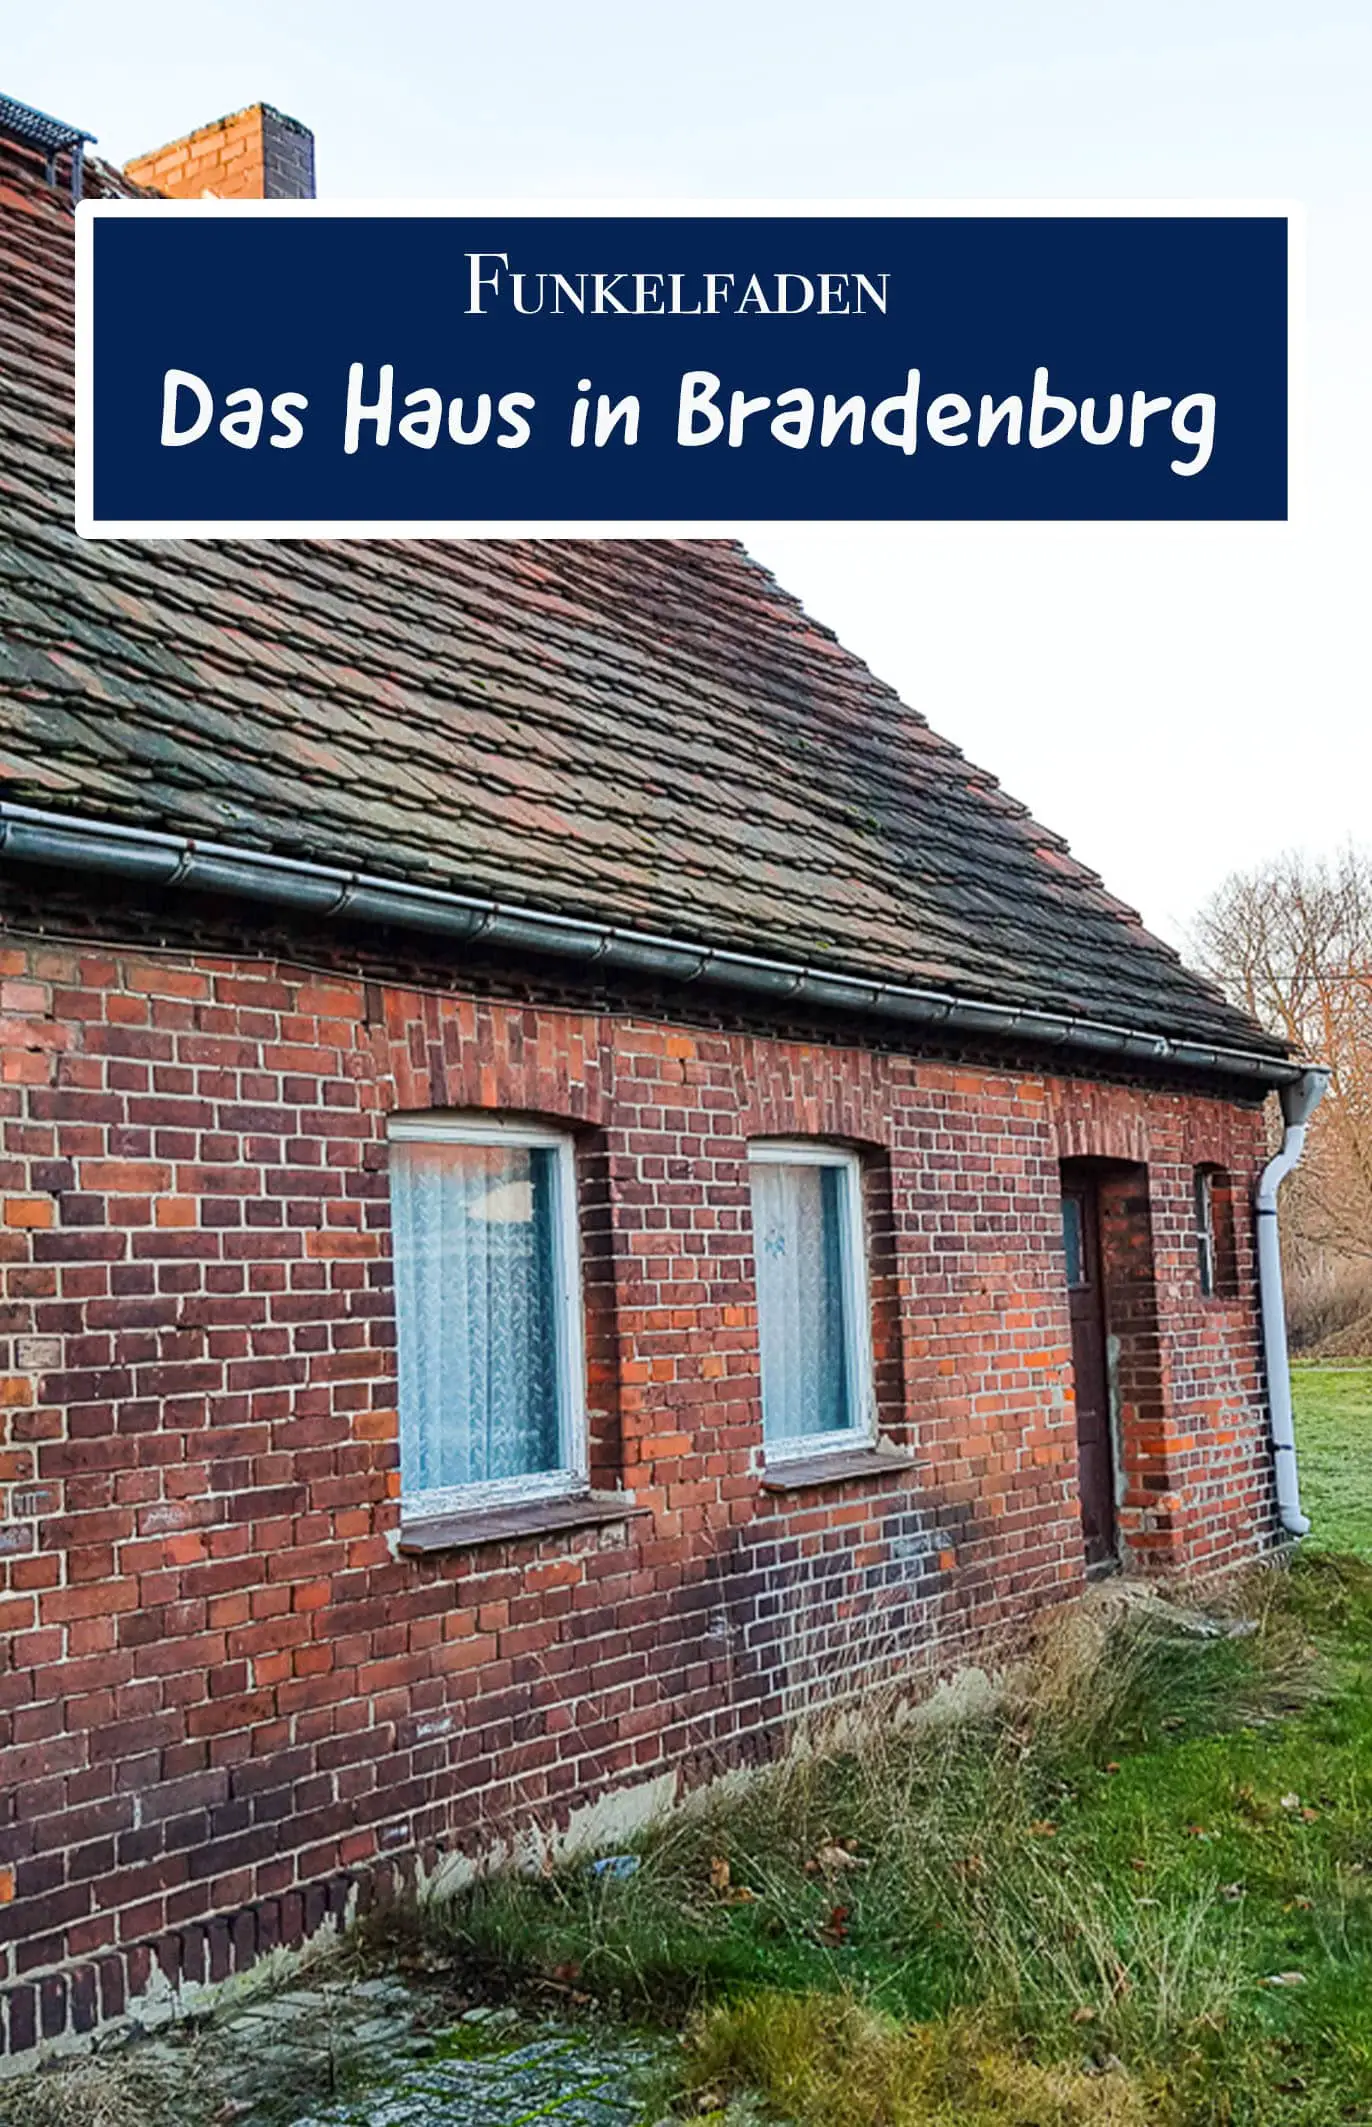 Schnäppchenhaus in Brandenburg kaufen - So gehts ganz ...